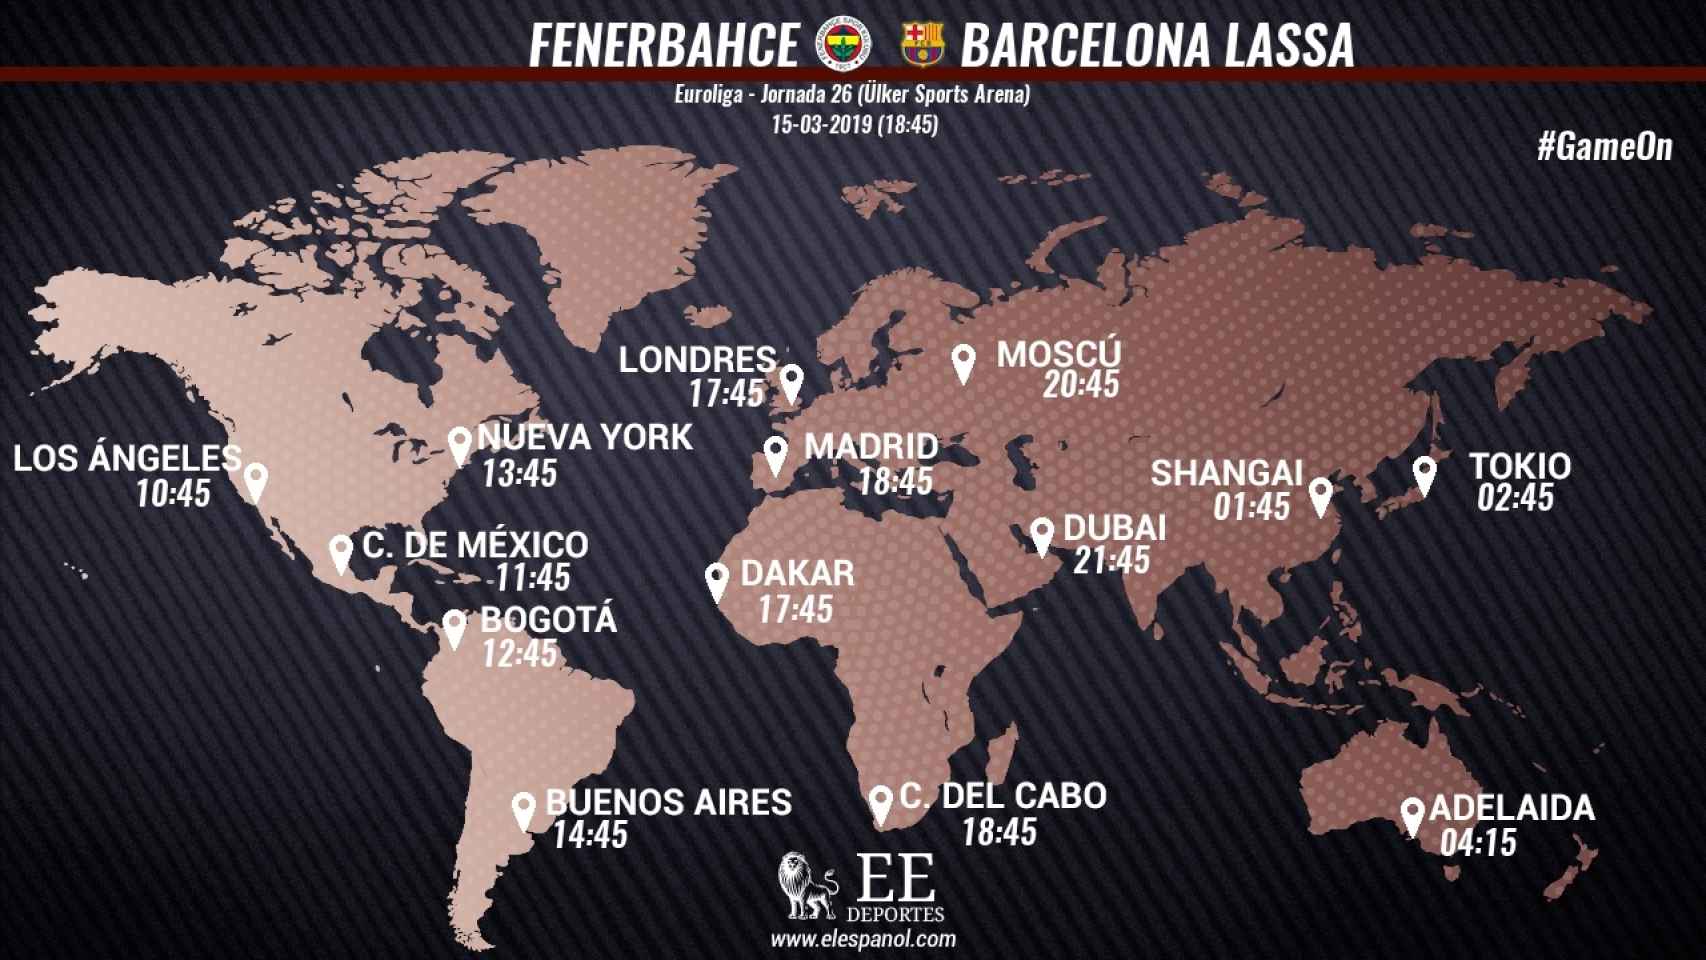 Horario internacional del Fenerbahce - Barcelona Lassa